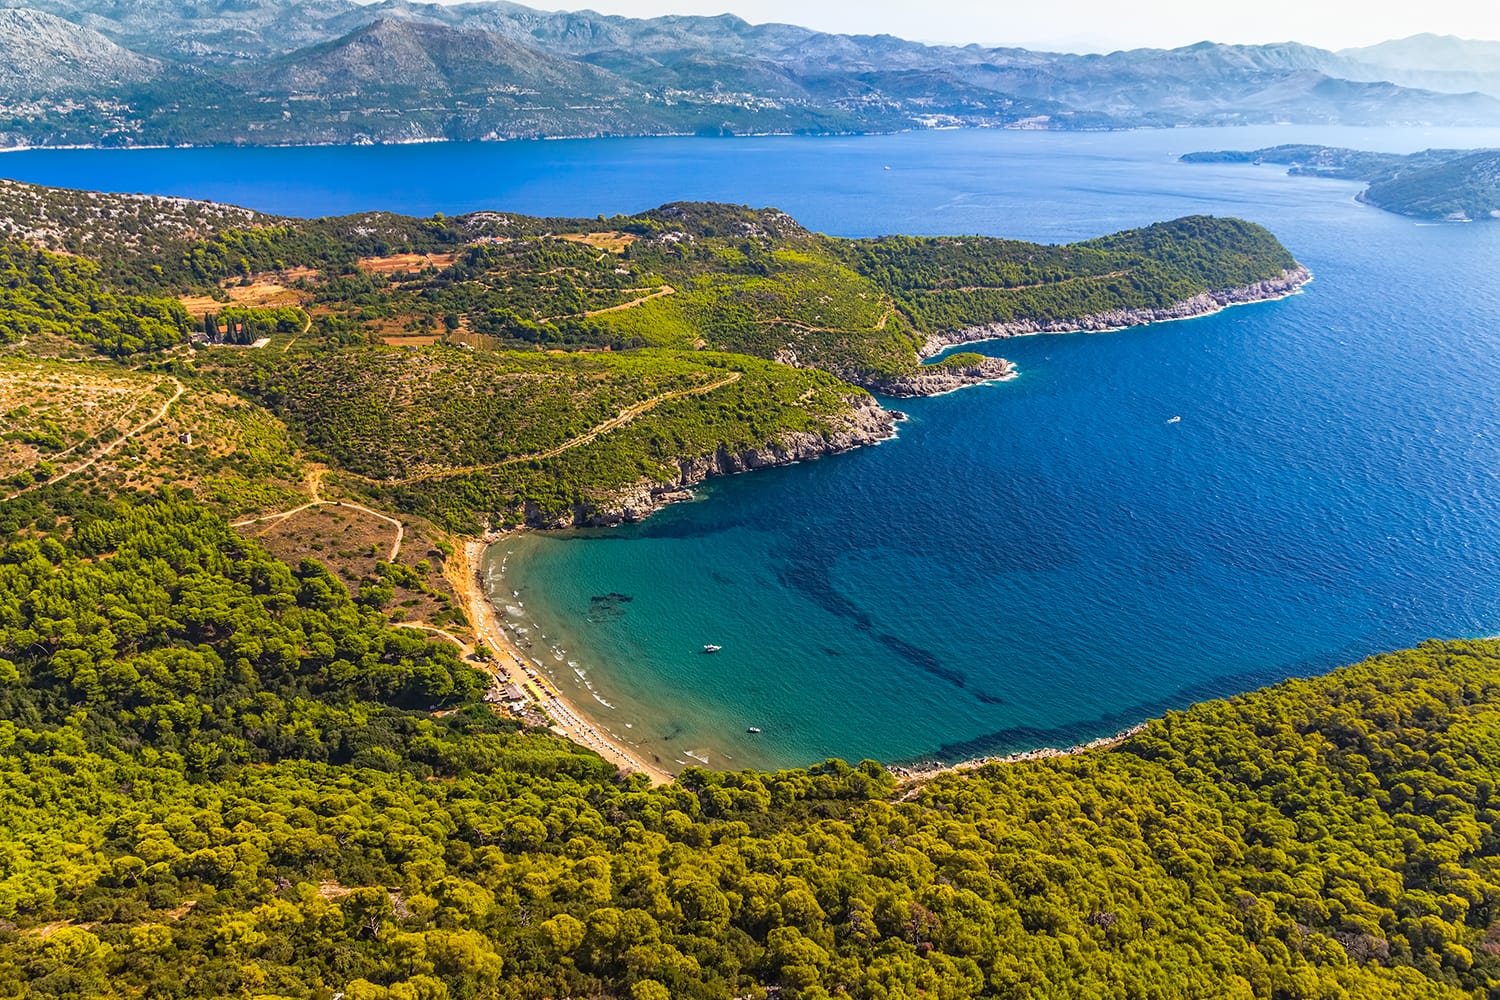 Песчаный пляж на острове Элафитес Лопуд с видом на архипелаг Дубровник.